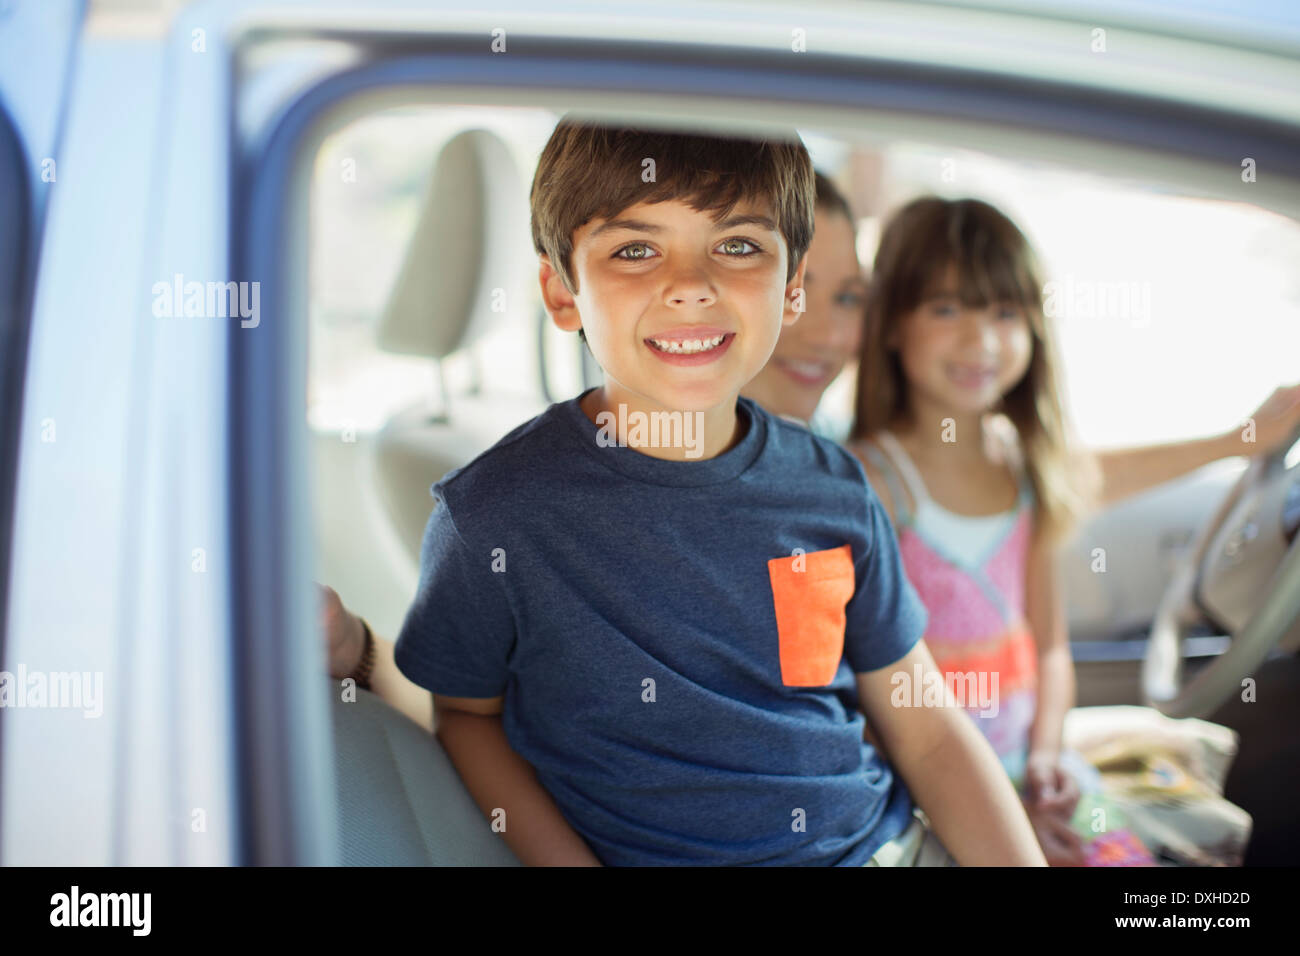 Portrait of smiling boy à l'intérieur de voiture Banque D'Images